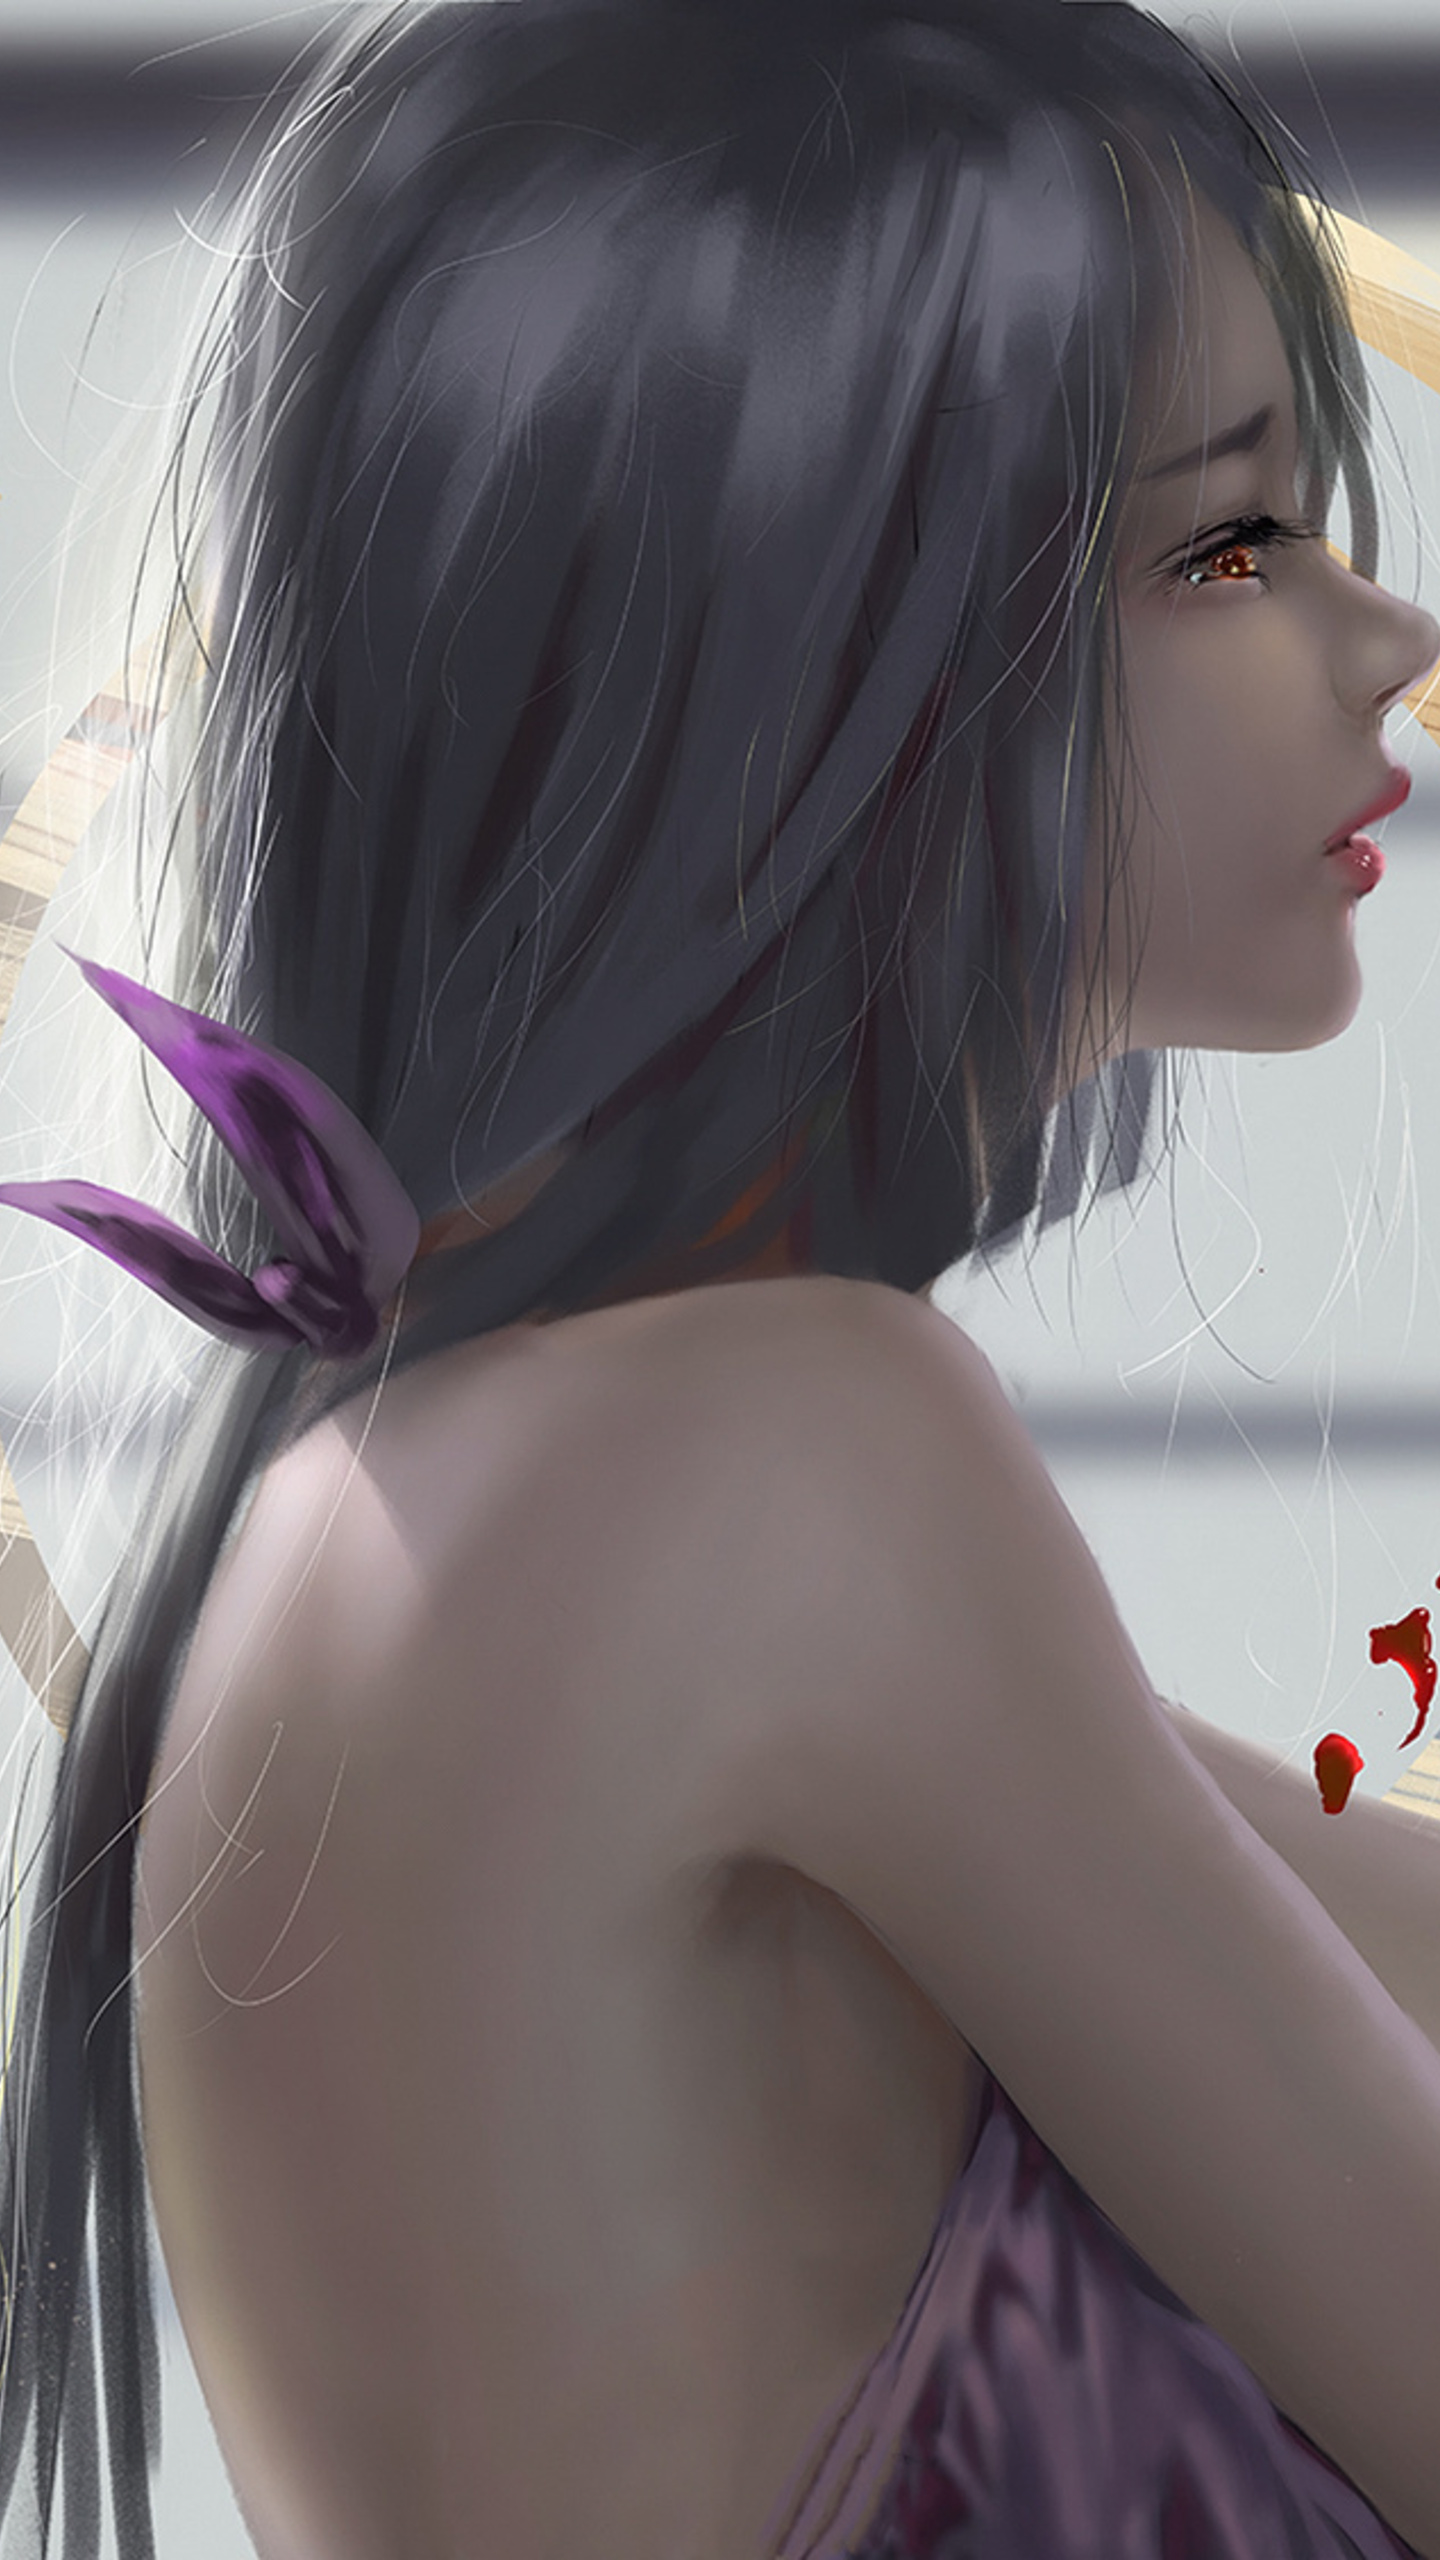 Angel Fantasy Anime Girl Art Wallpaper 4K HD PC 6111k